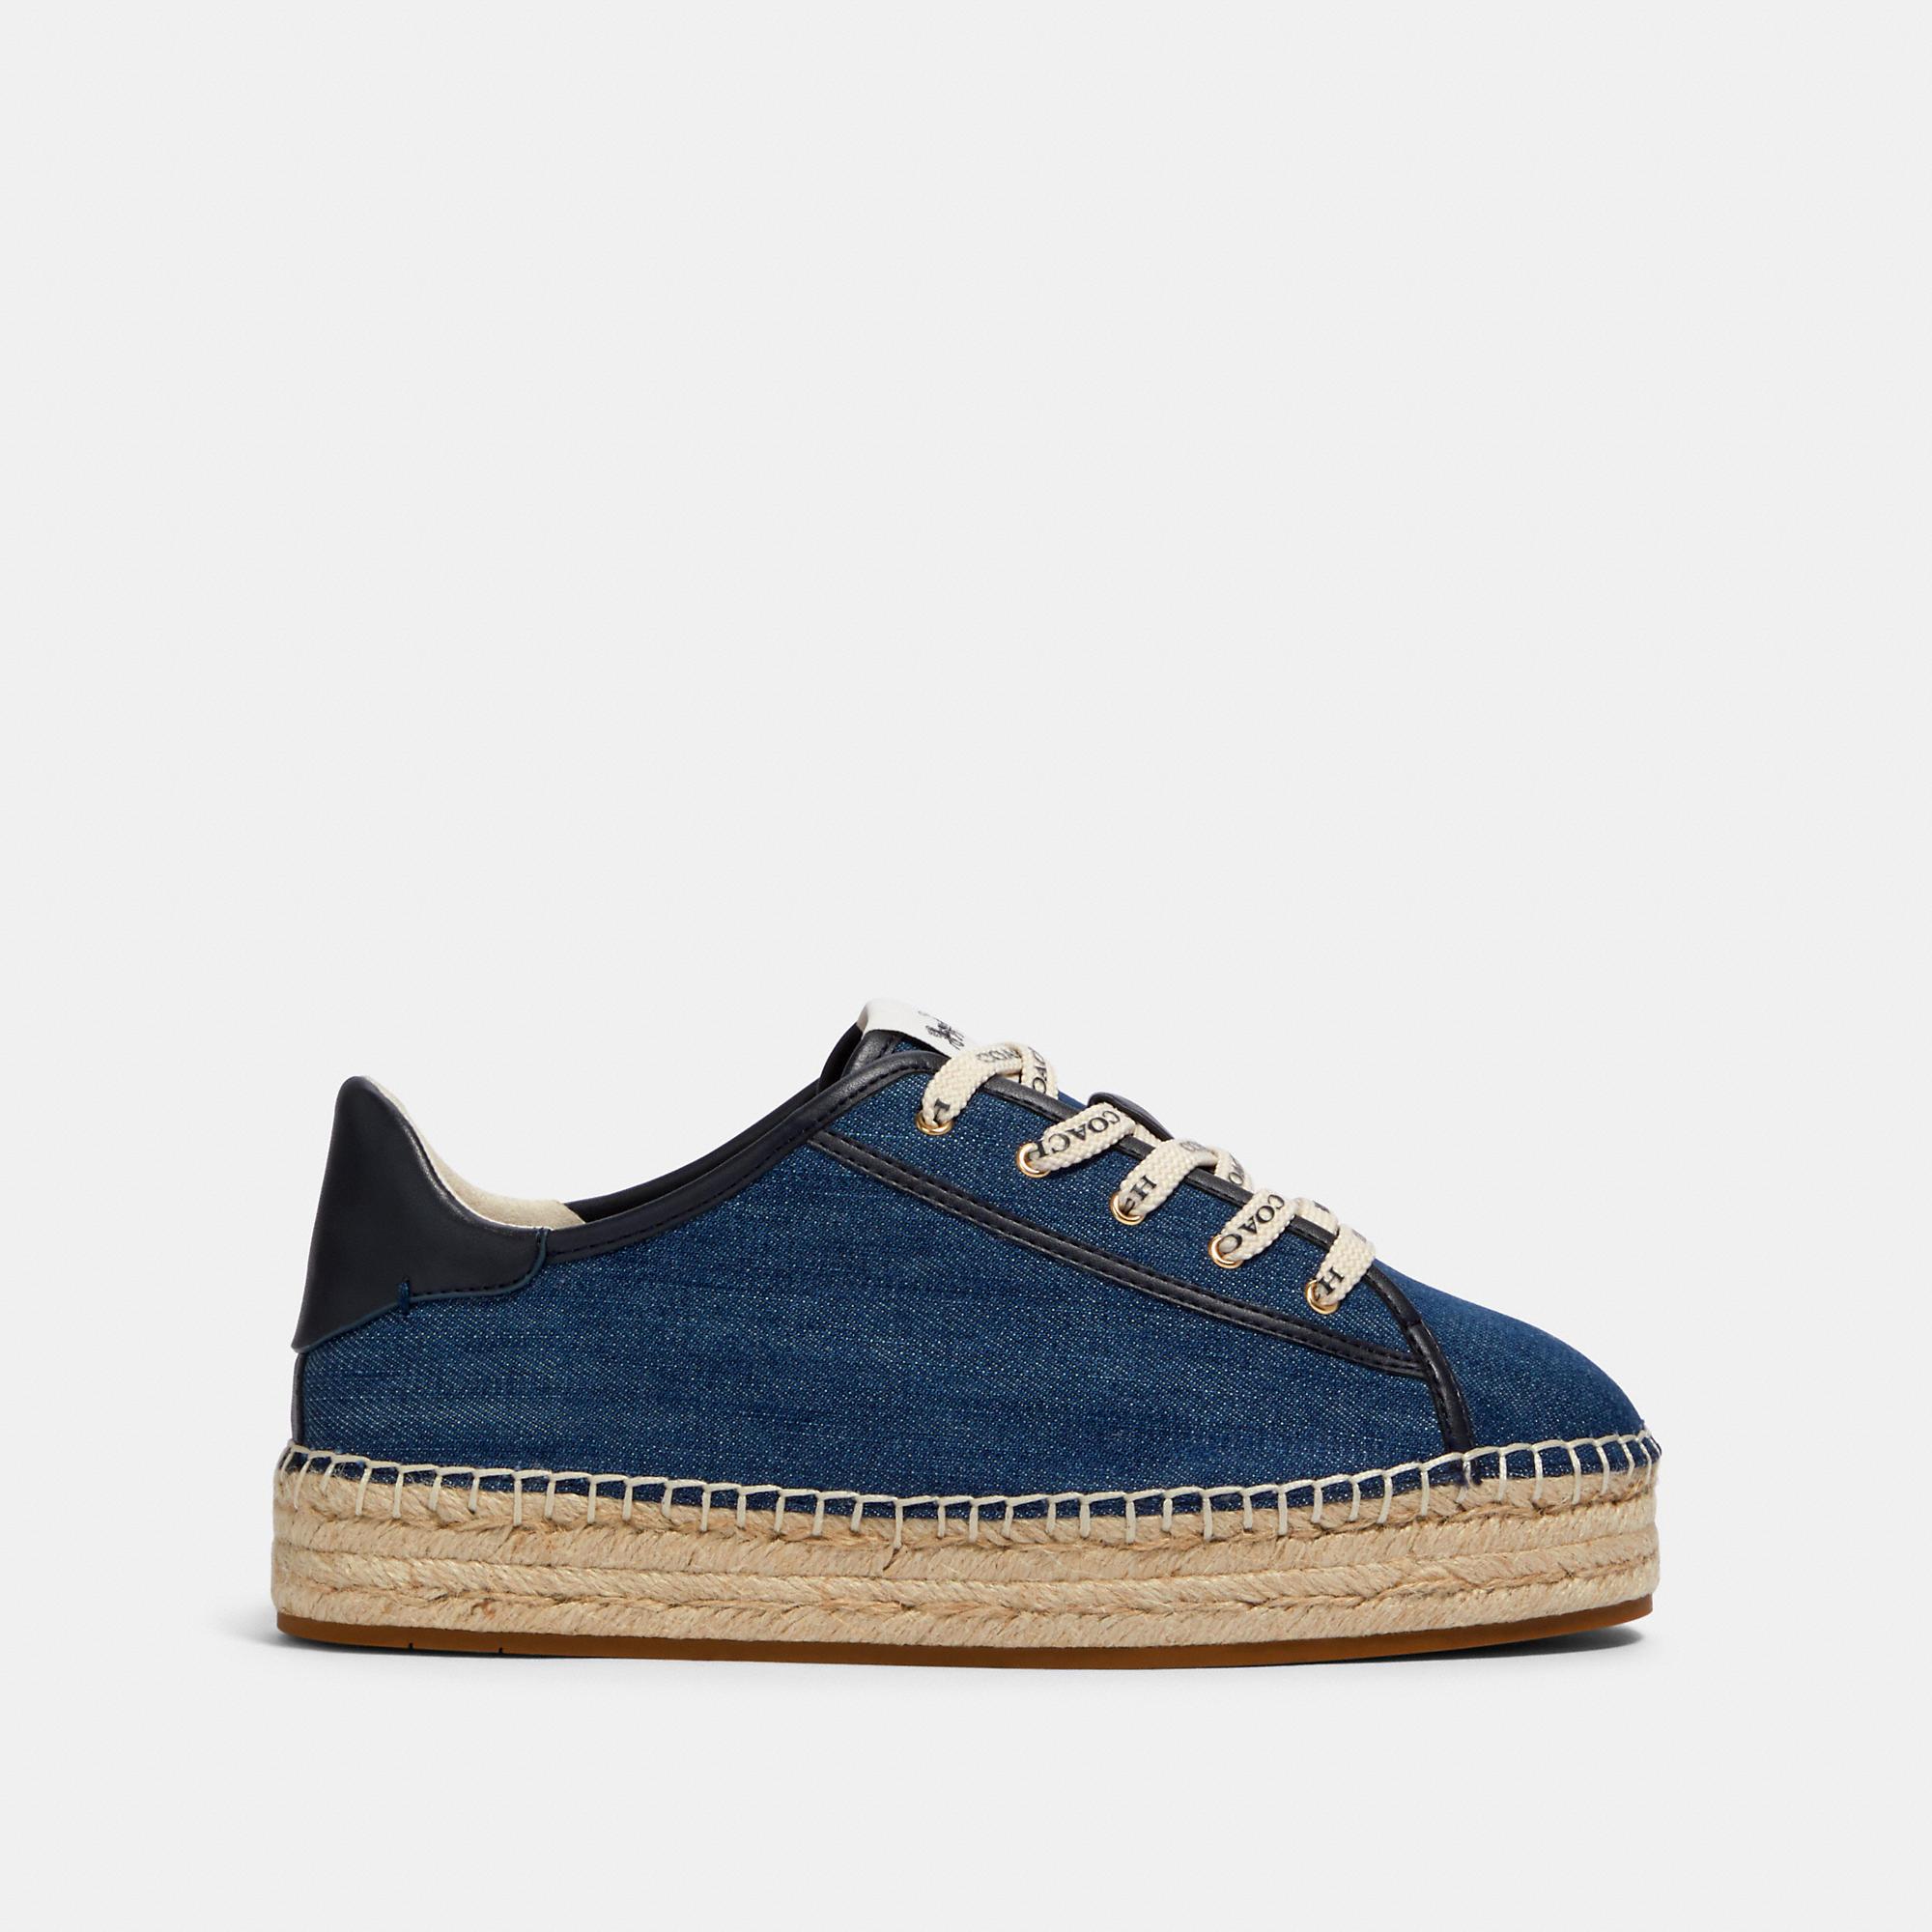 COACH Denim Cate Espadrille Sneaker in Denim (Blue) - Lyst